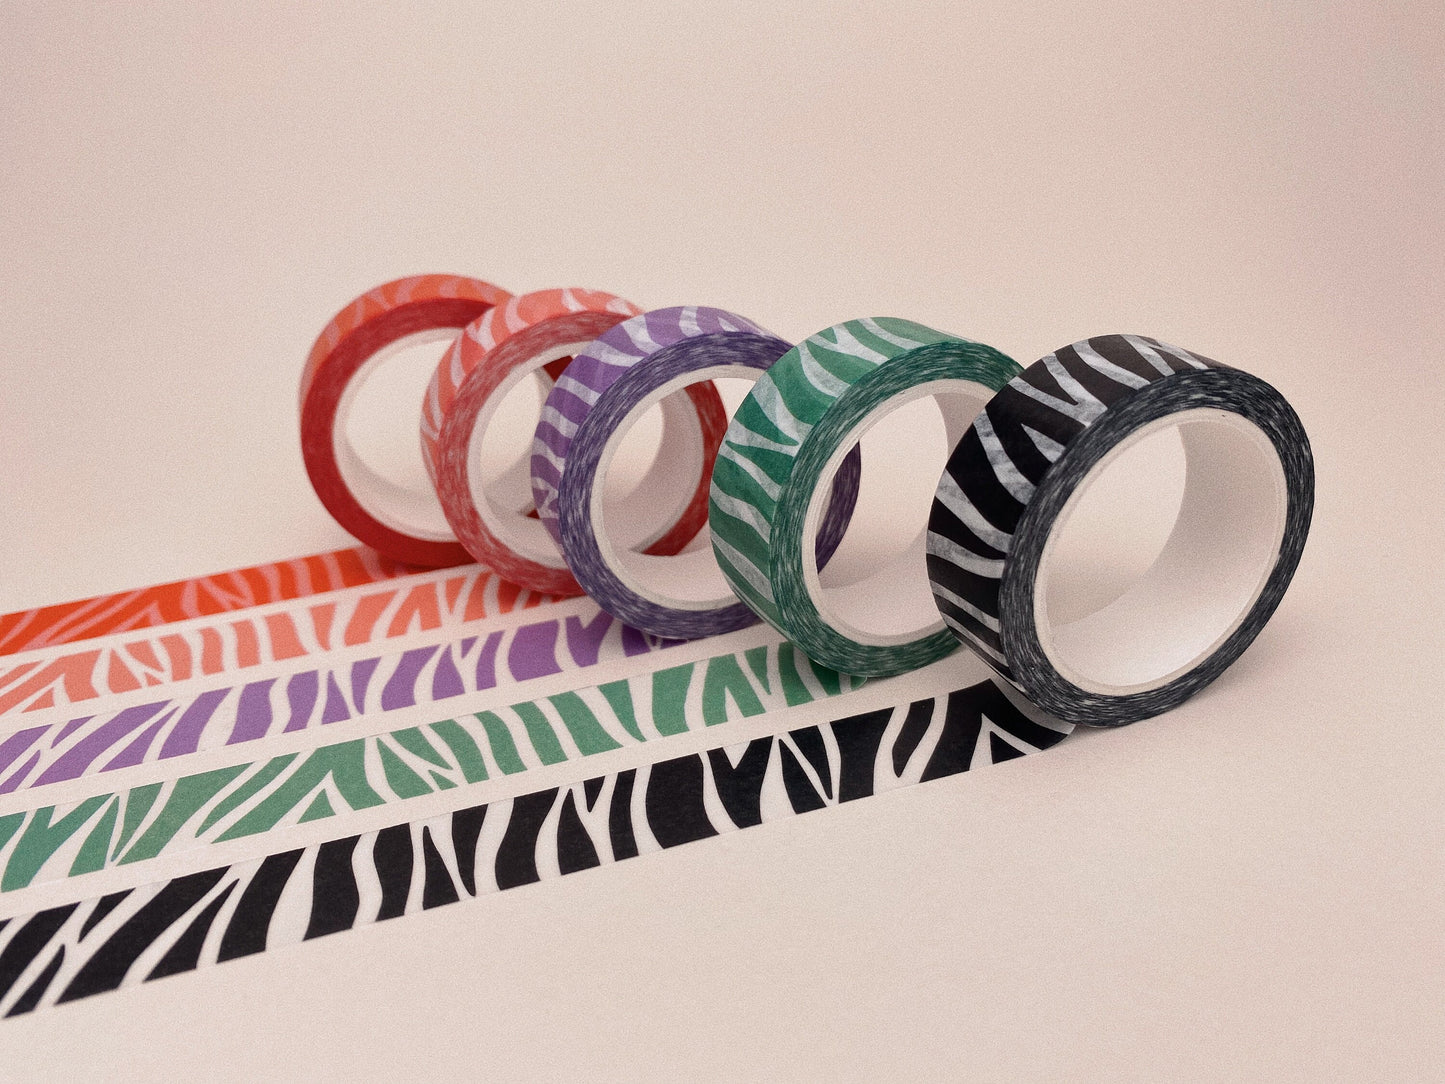 Green and White Zebra Stripes Washi Tape